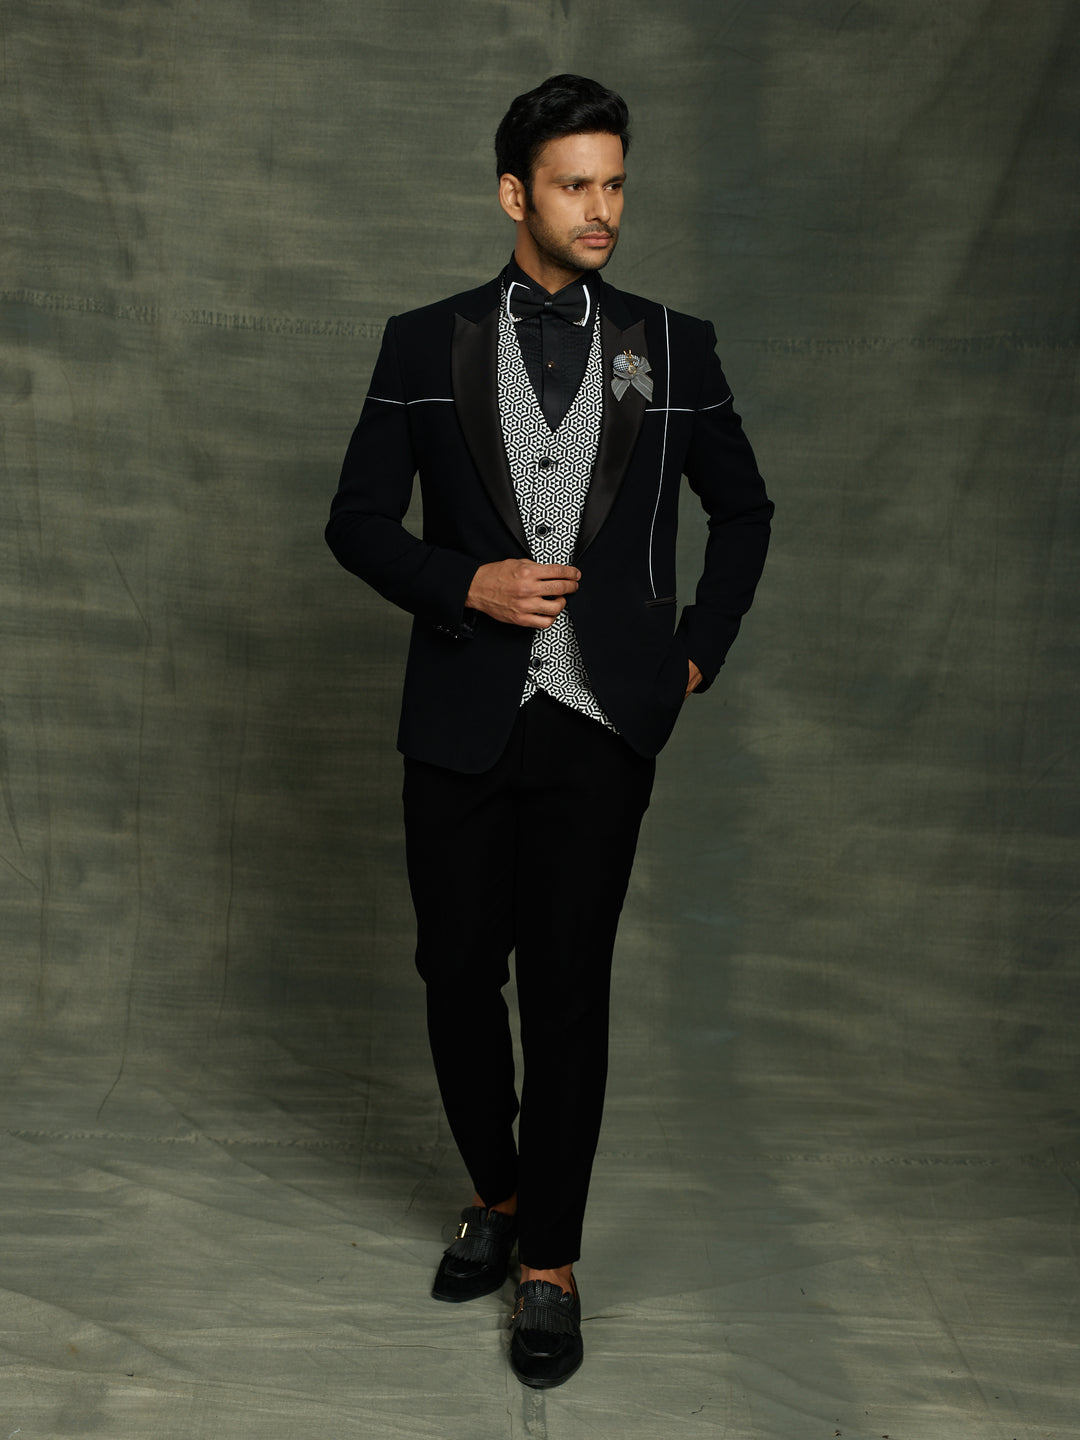 black suit with stylish waist coat.